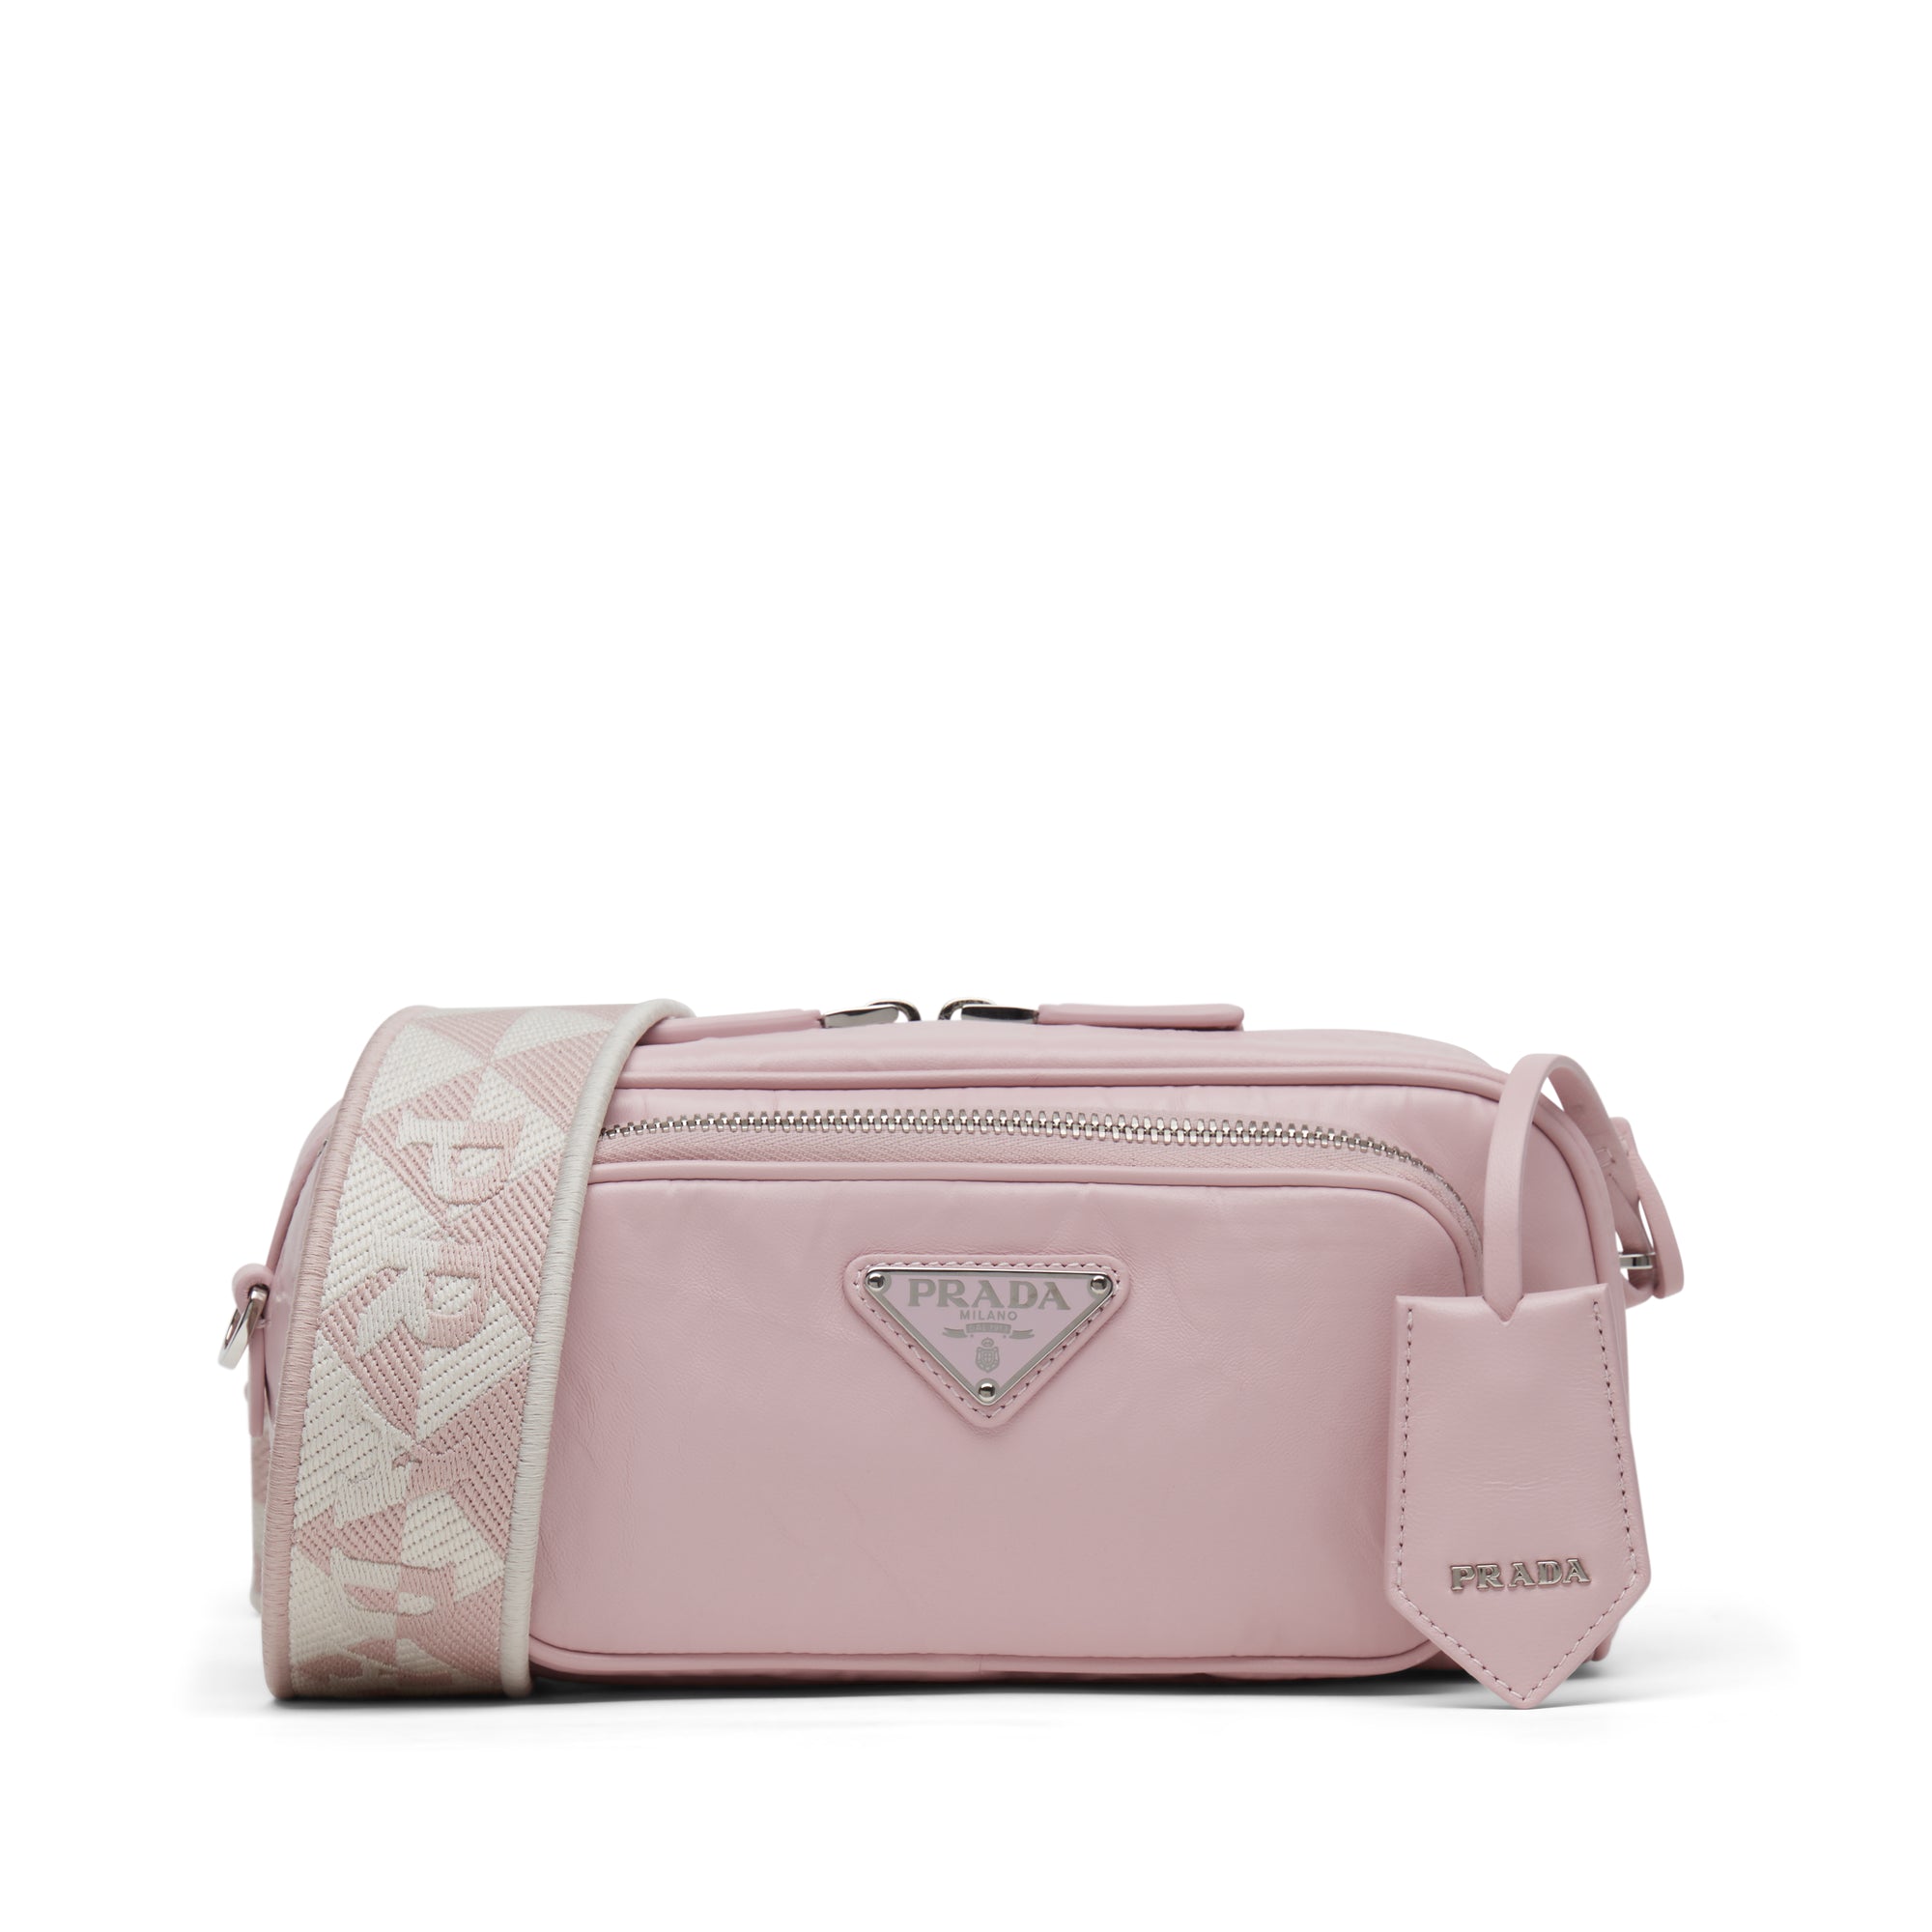 Prada - Women’s Multi Pocket Handbag - (Alabaster Pink) view 1